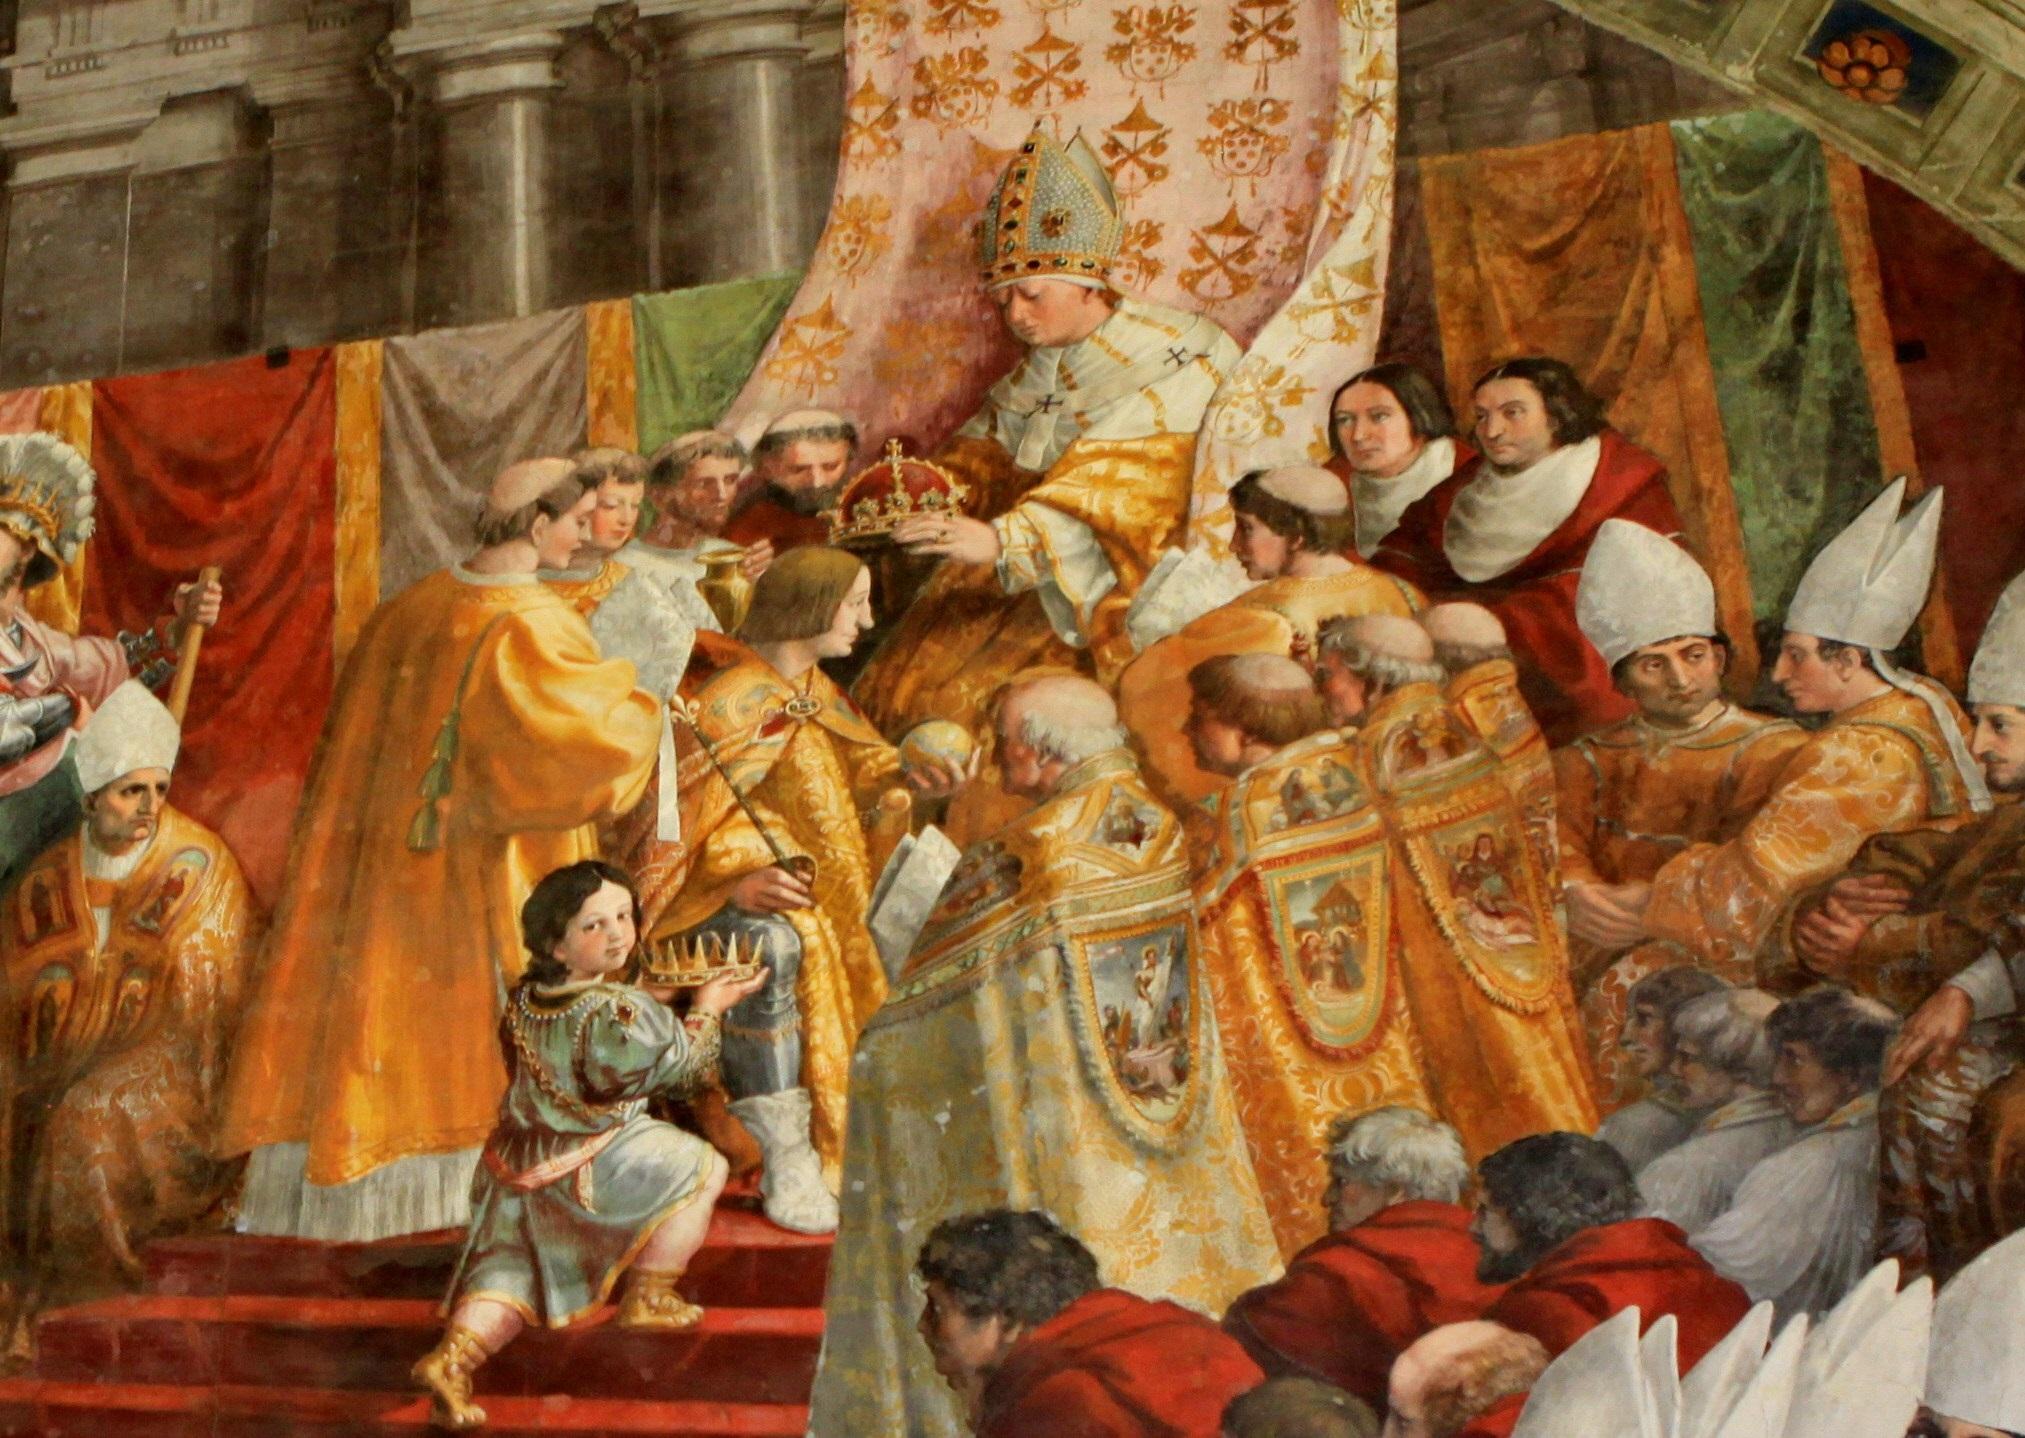 梵蒂冈博物馆(9)拉斐尔画室4 火灾厅壁画:波尔哥的火灾,拉斐尔老师佩